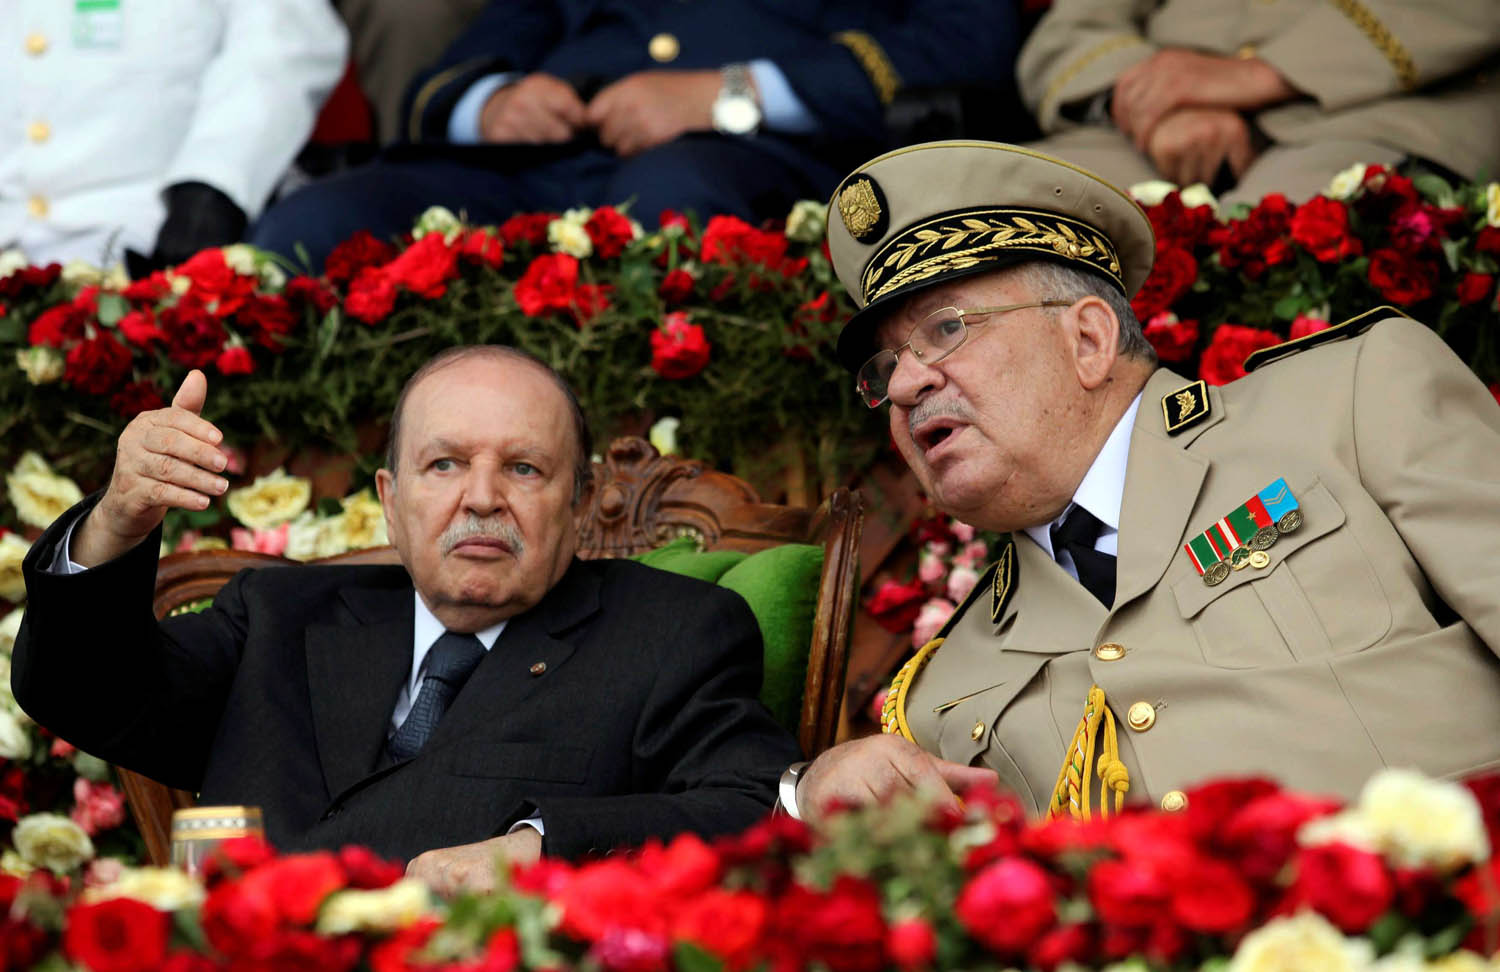 الرئيس الجزائري عبدالعزيز بوتفليقة وقائد الجيش أحمد قايد صالح